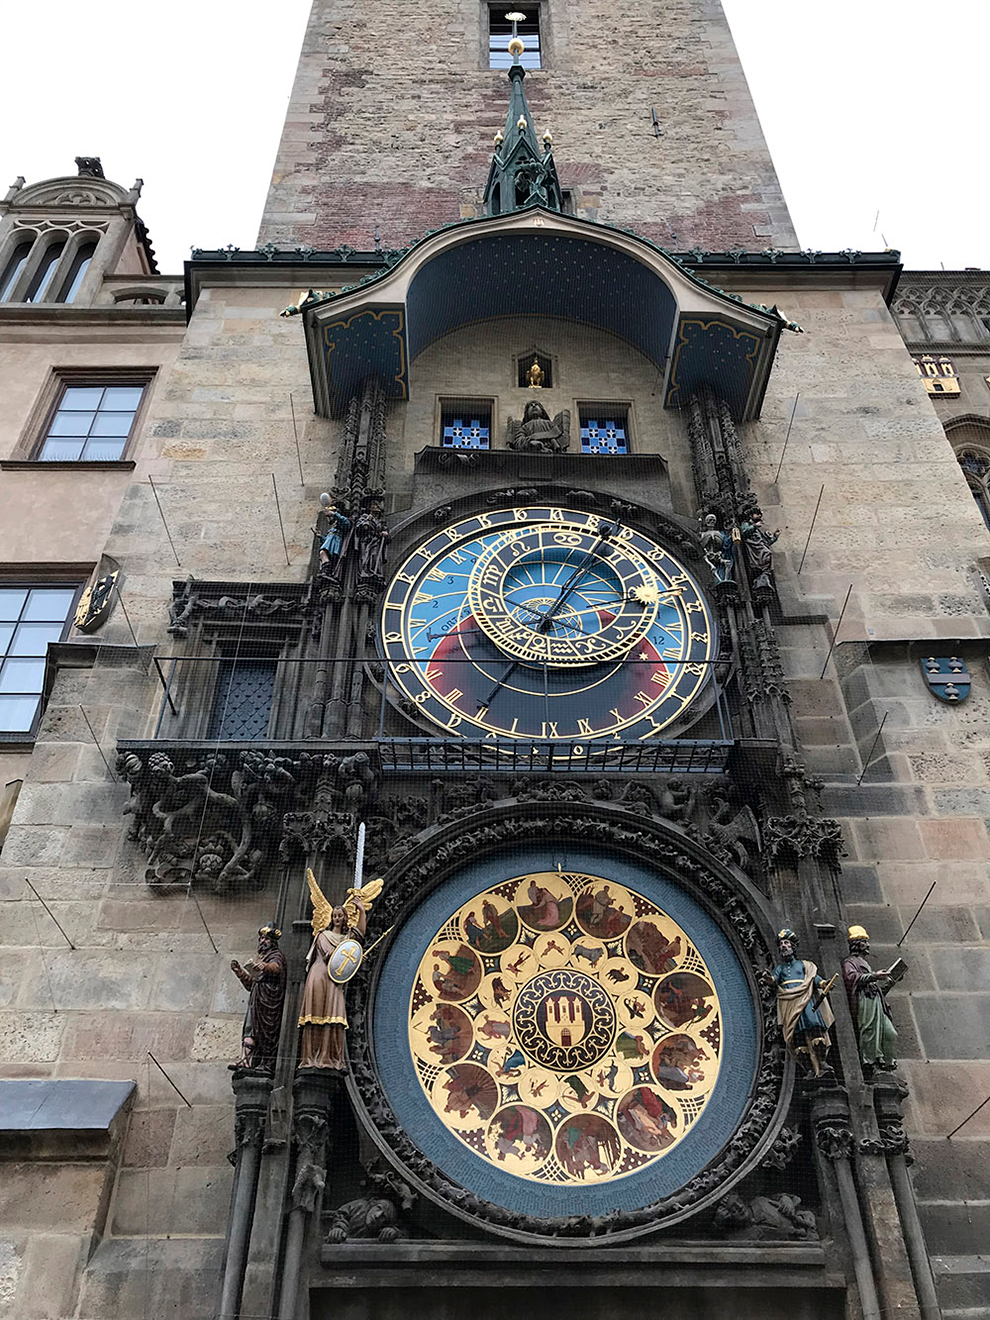 Часы работают с 1410 года. Тогда появились механические часы и астрономический циферблат